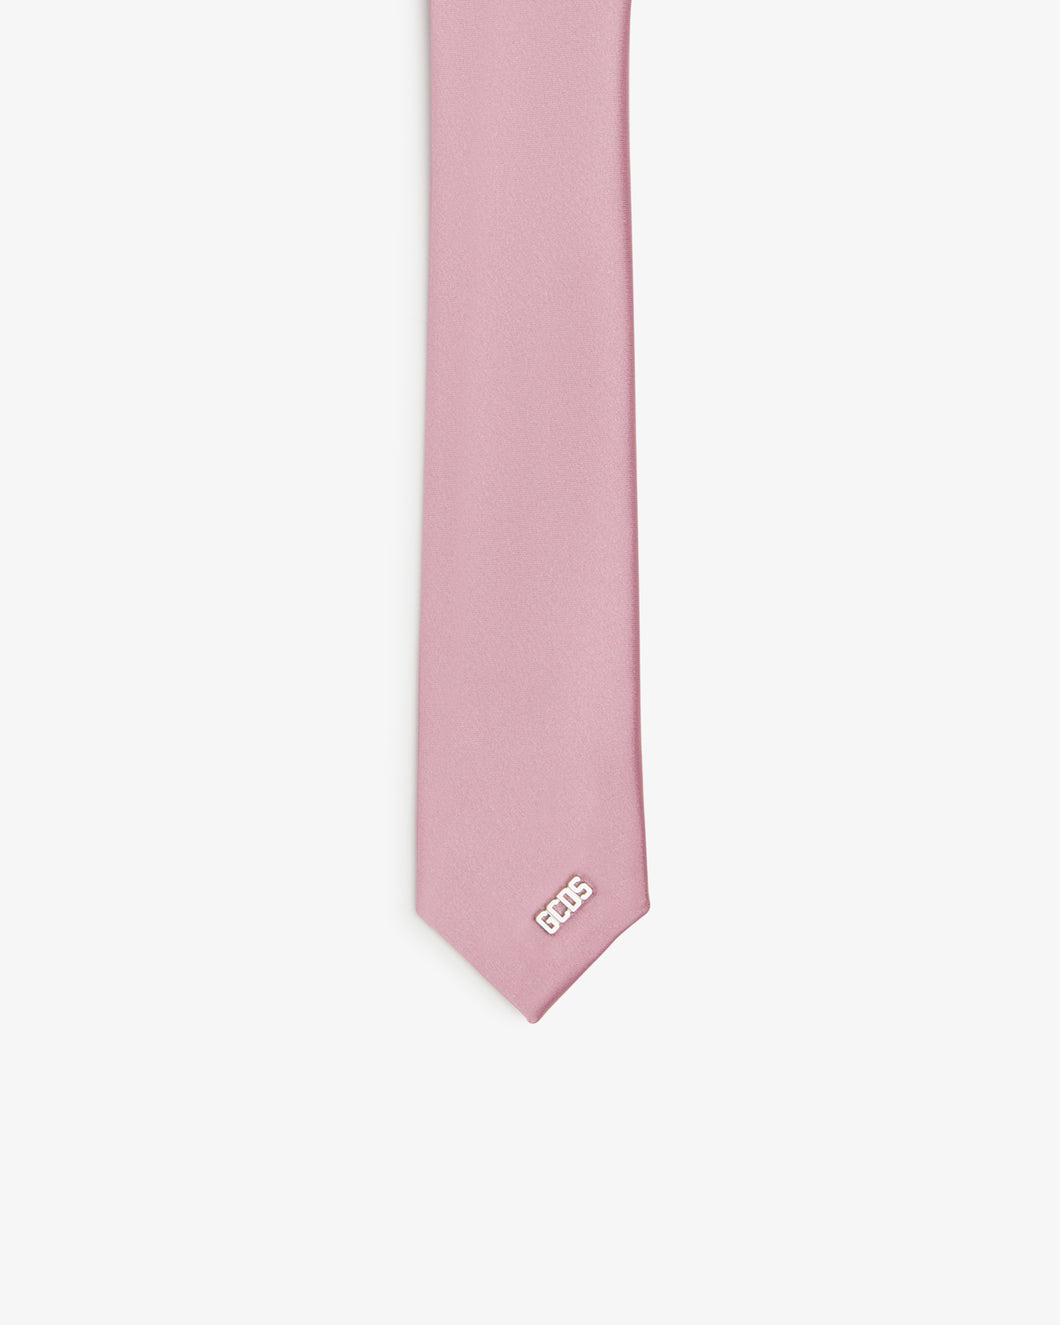 Gcds Tie | Unisex Accessories Pink | GCDS®